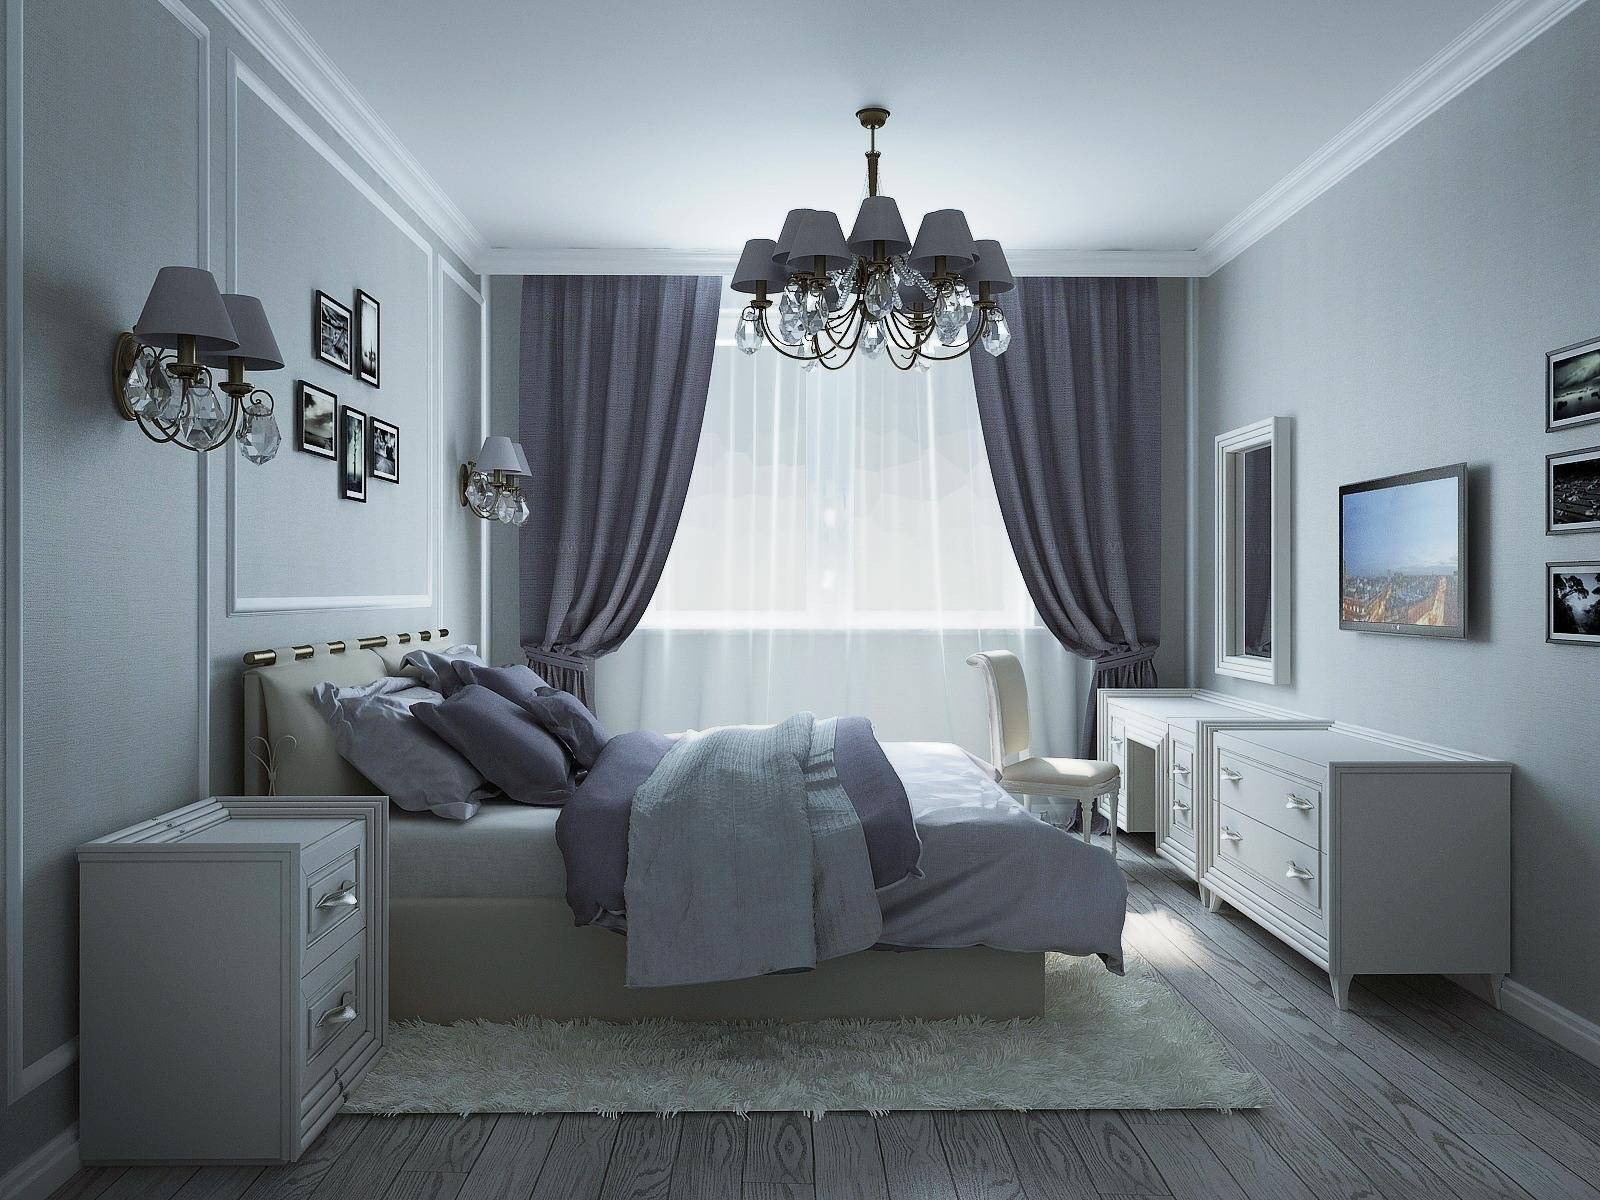 Идеи для спальни: актуальные и доступные варианты оформления интерьера спальни (105 фото)